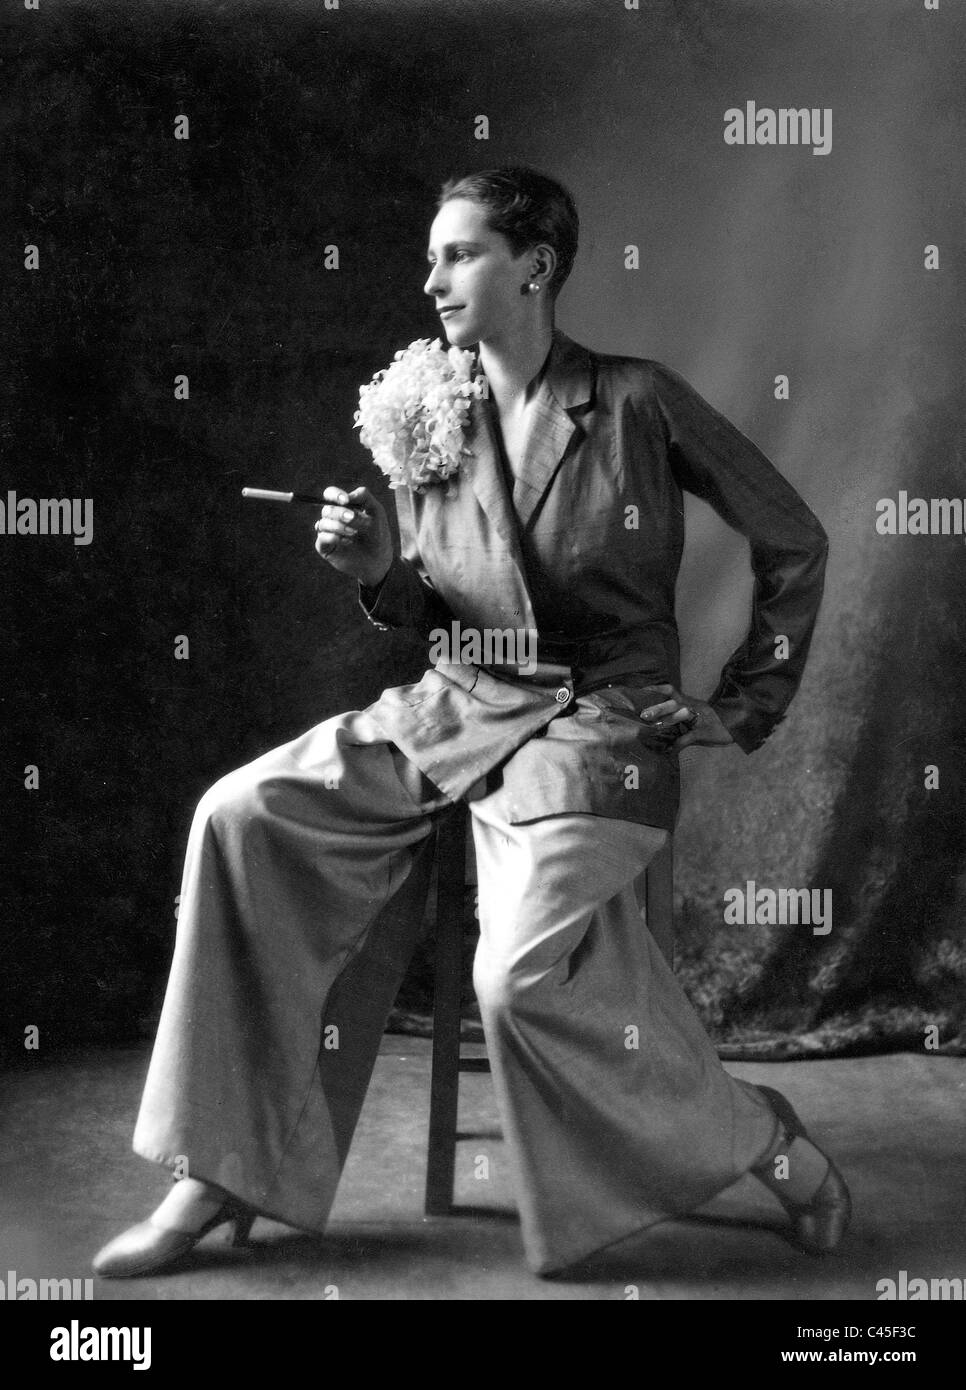 Mode der 1920er jahre frauen Schwarzweiß-Stockfotos und -bilder - Alamy